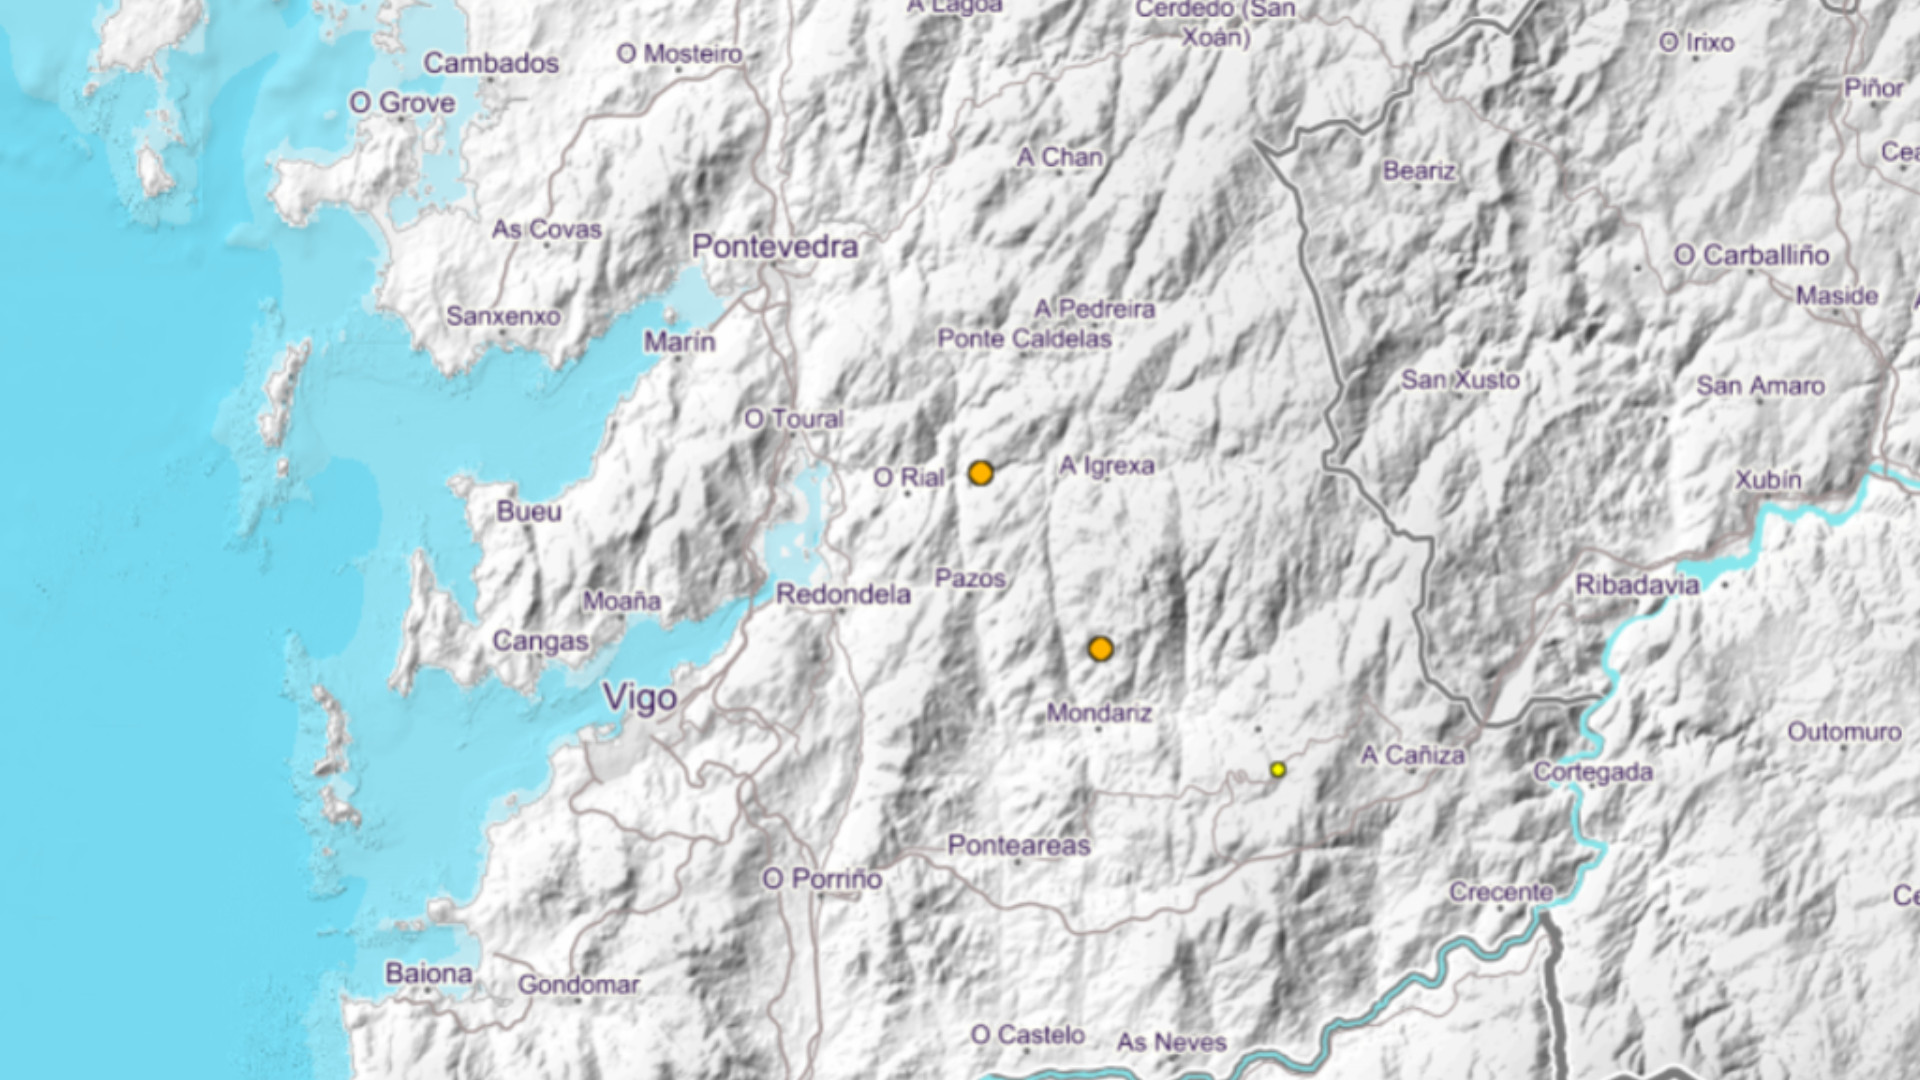 Tres terremotos registrados esta semana en la provincia de Pontevedra. Imagen: ING